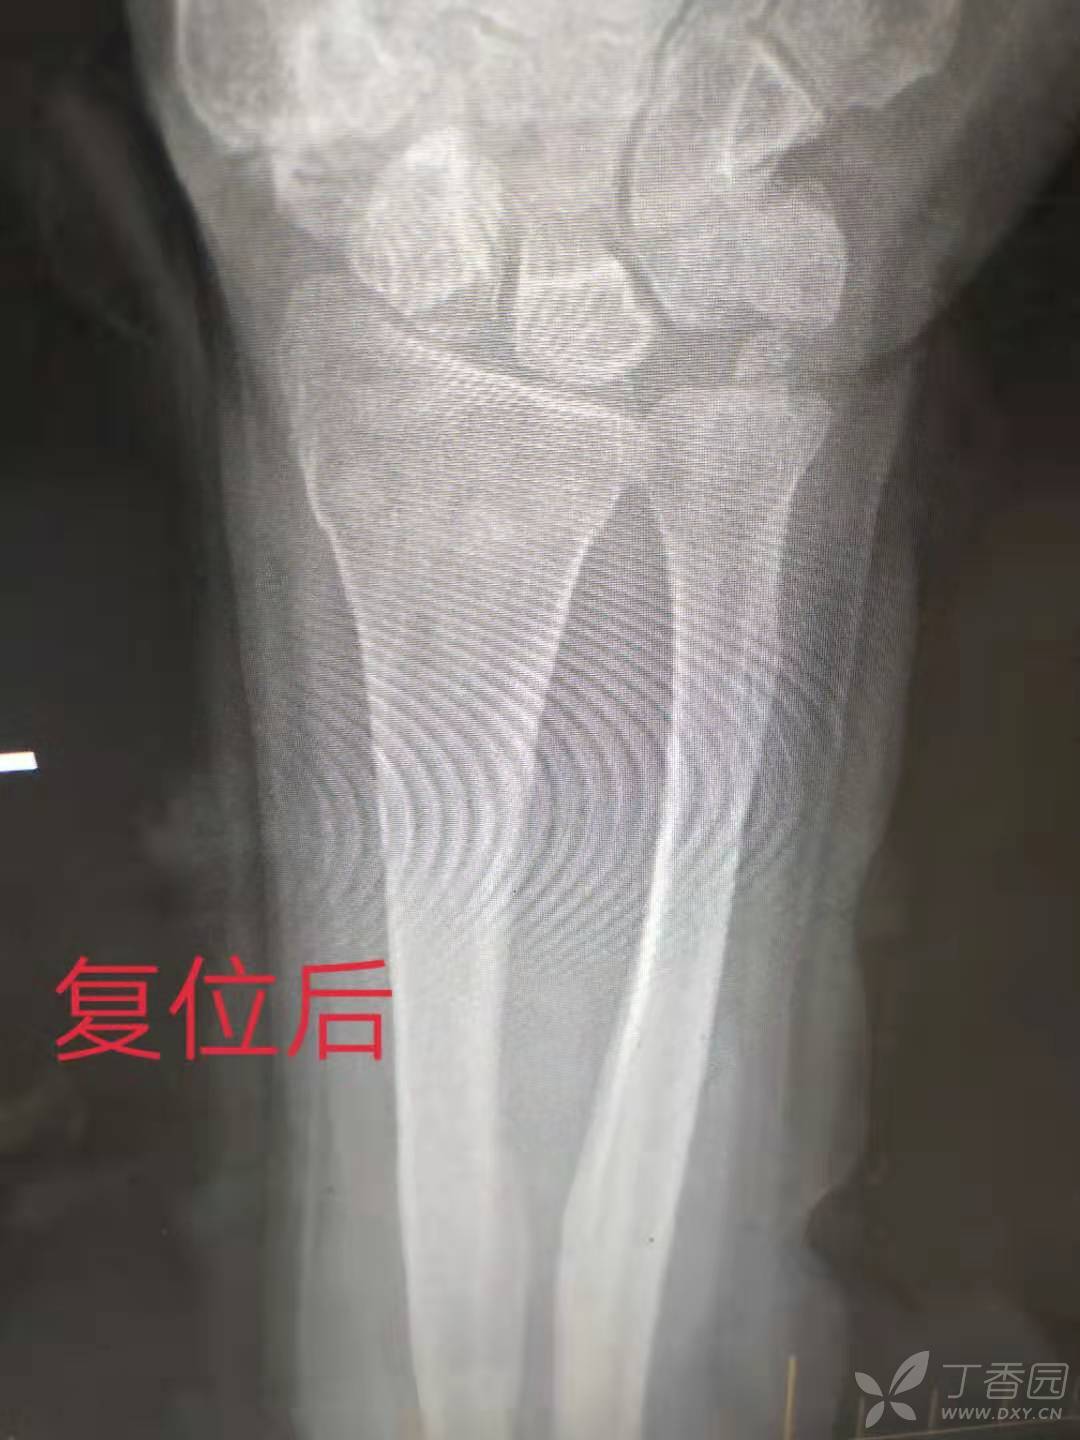 一例桡骨远端骨折,尺骨茎突骨折手法复位